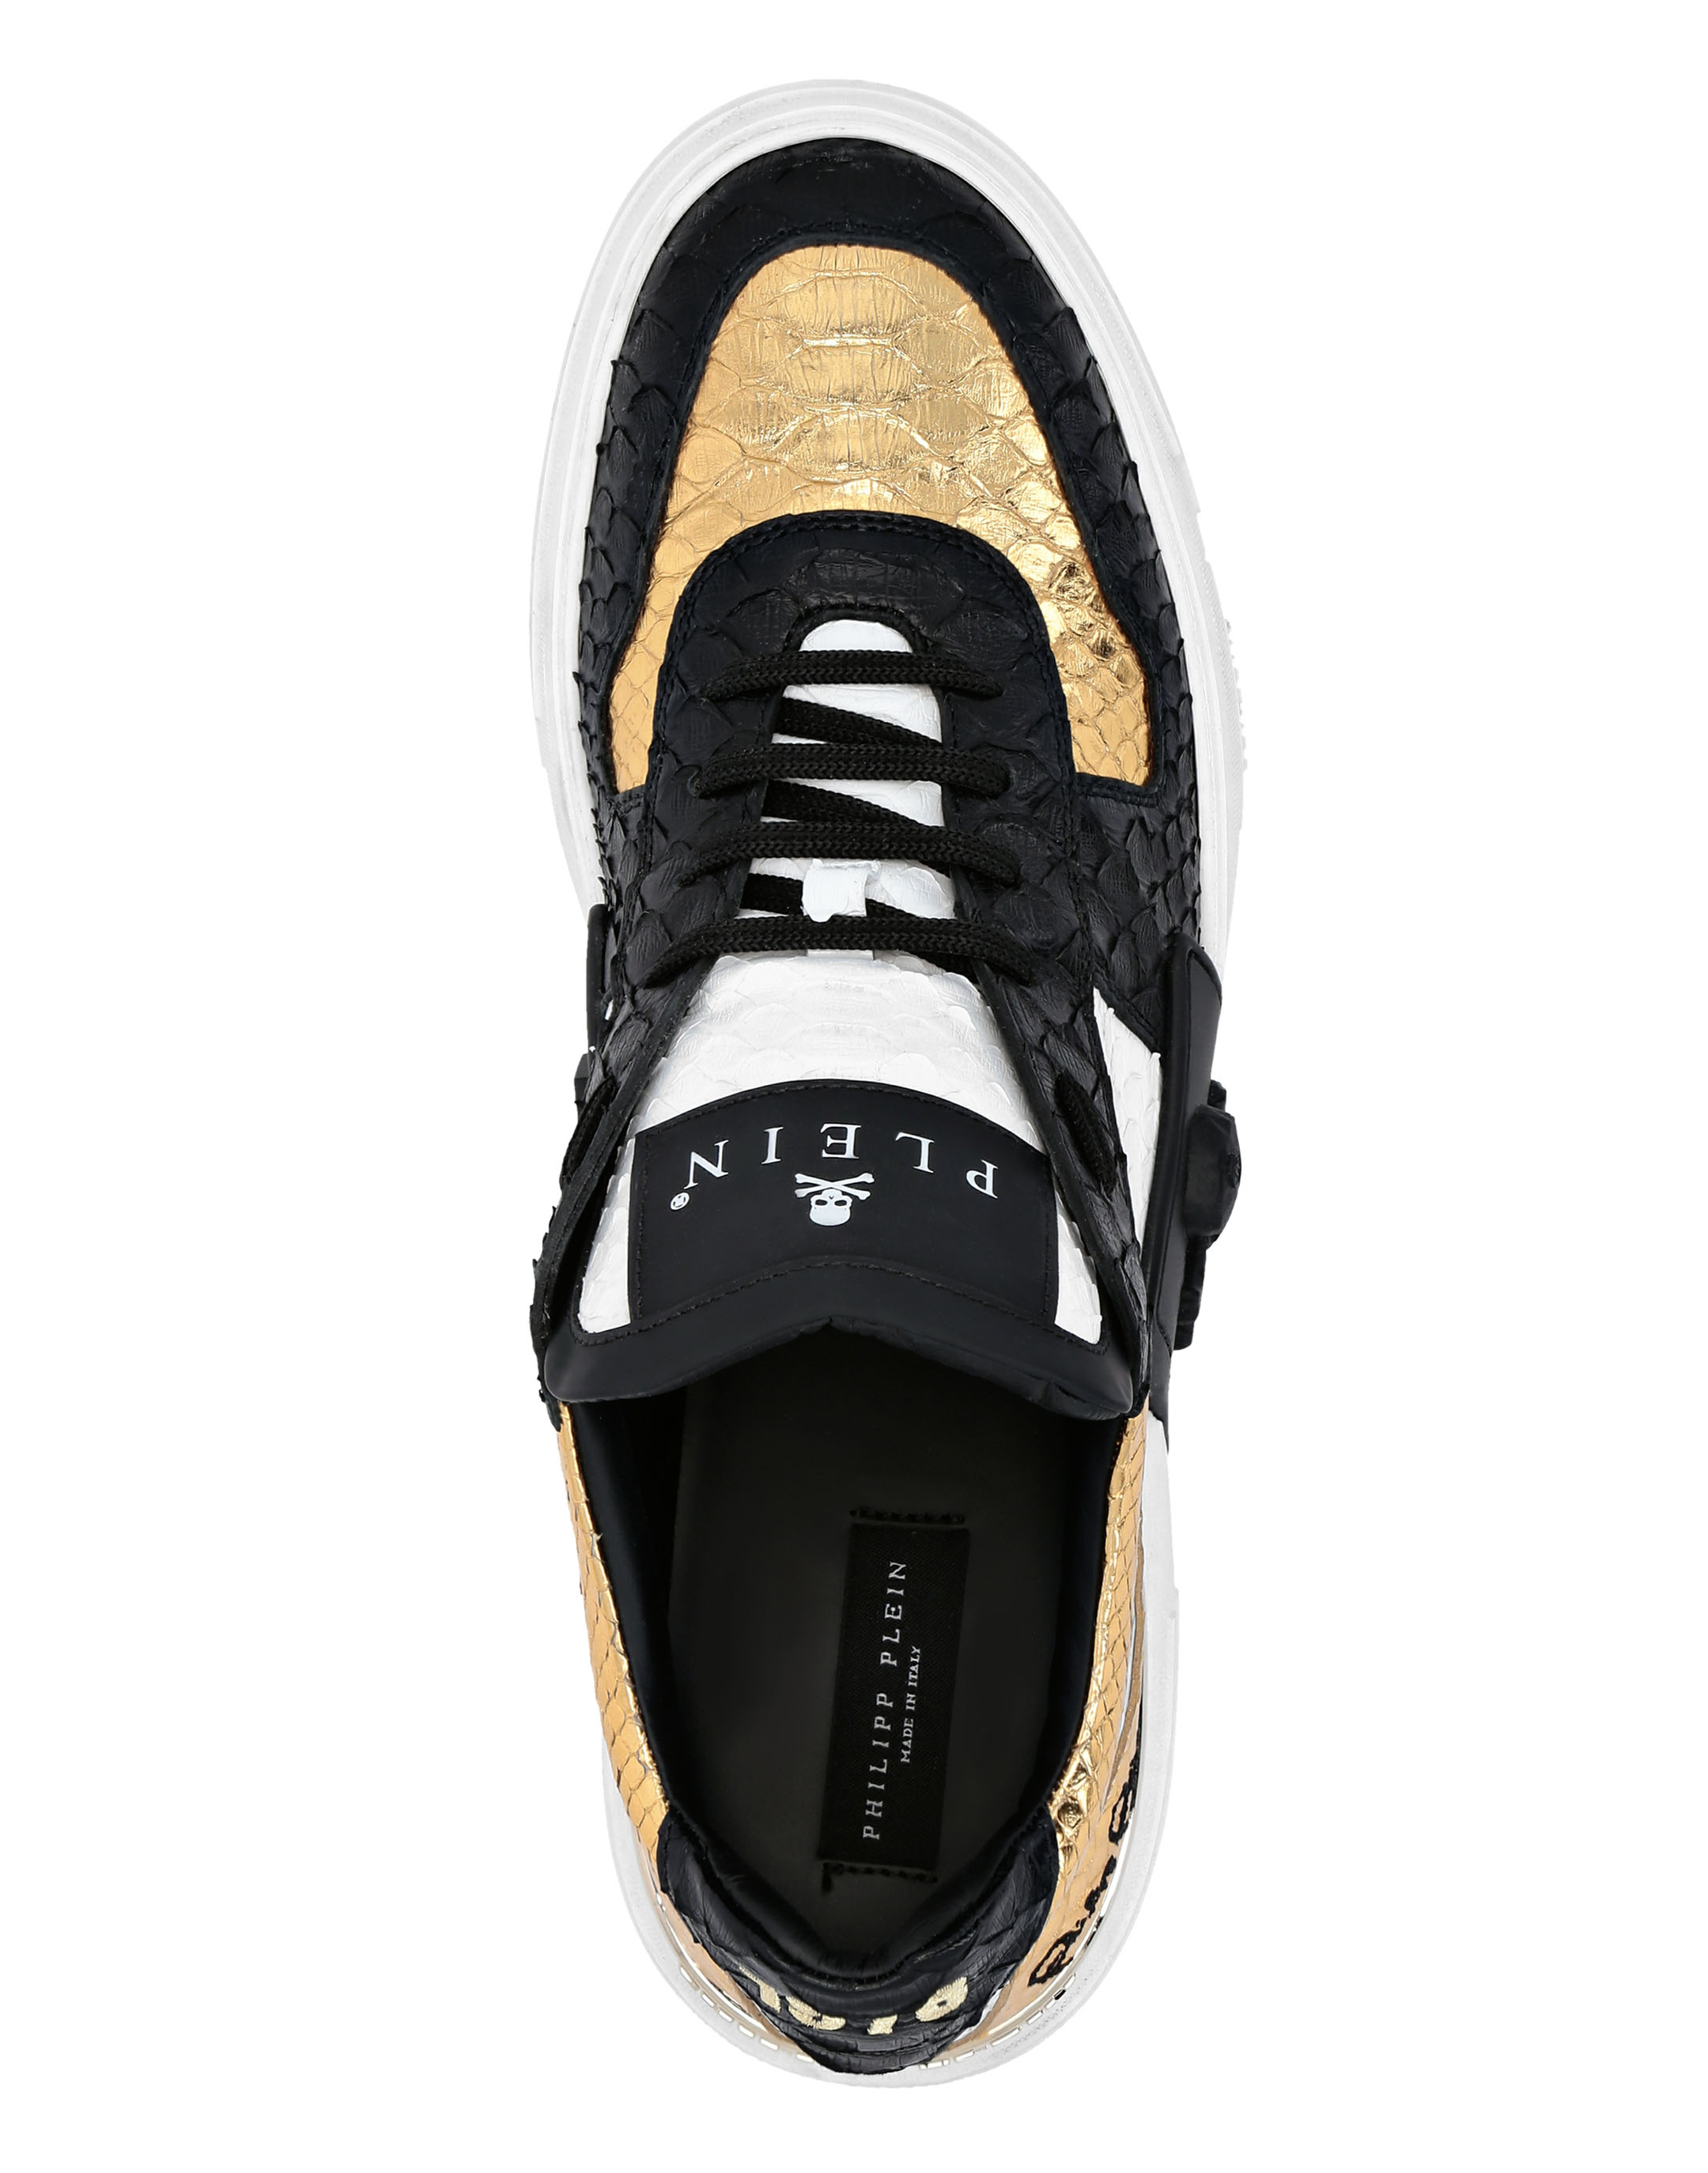 PHANTOM KICK$ Lo-Top Sneakers Gold 